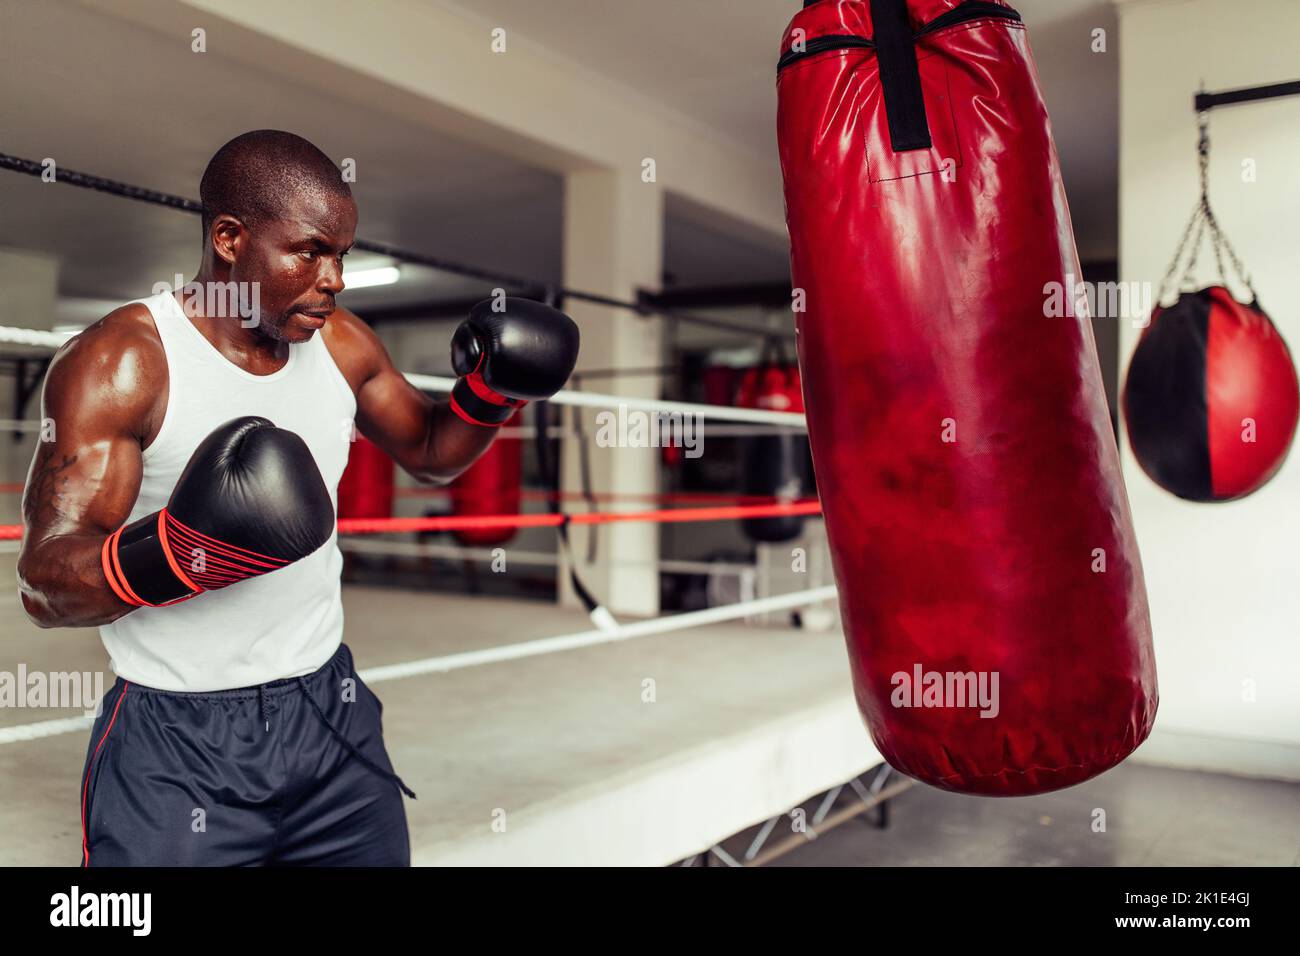 Joven boxeador centrado trabajando con una bolsa de puñetazos roja en el gimnasio. Joven atlético practicando sus técnicas de punzonado en un gimnasio de boxeo. Foto de stock